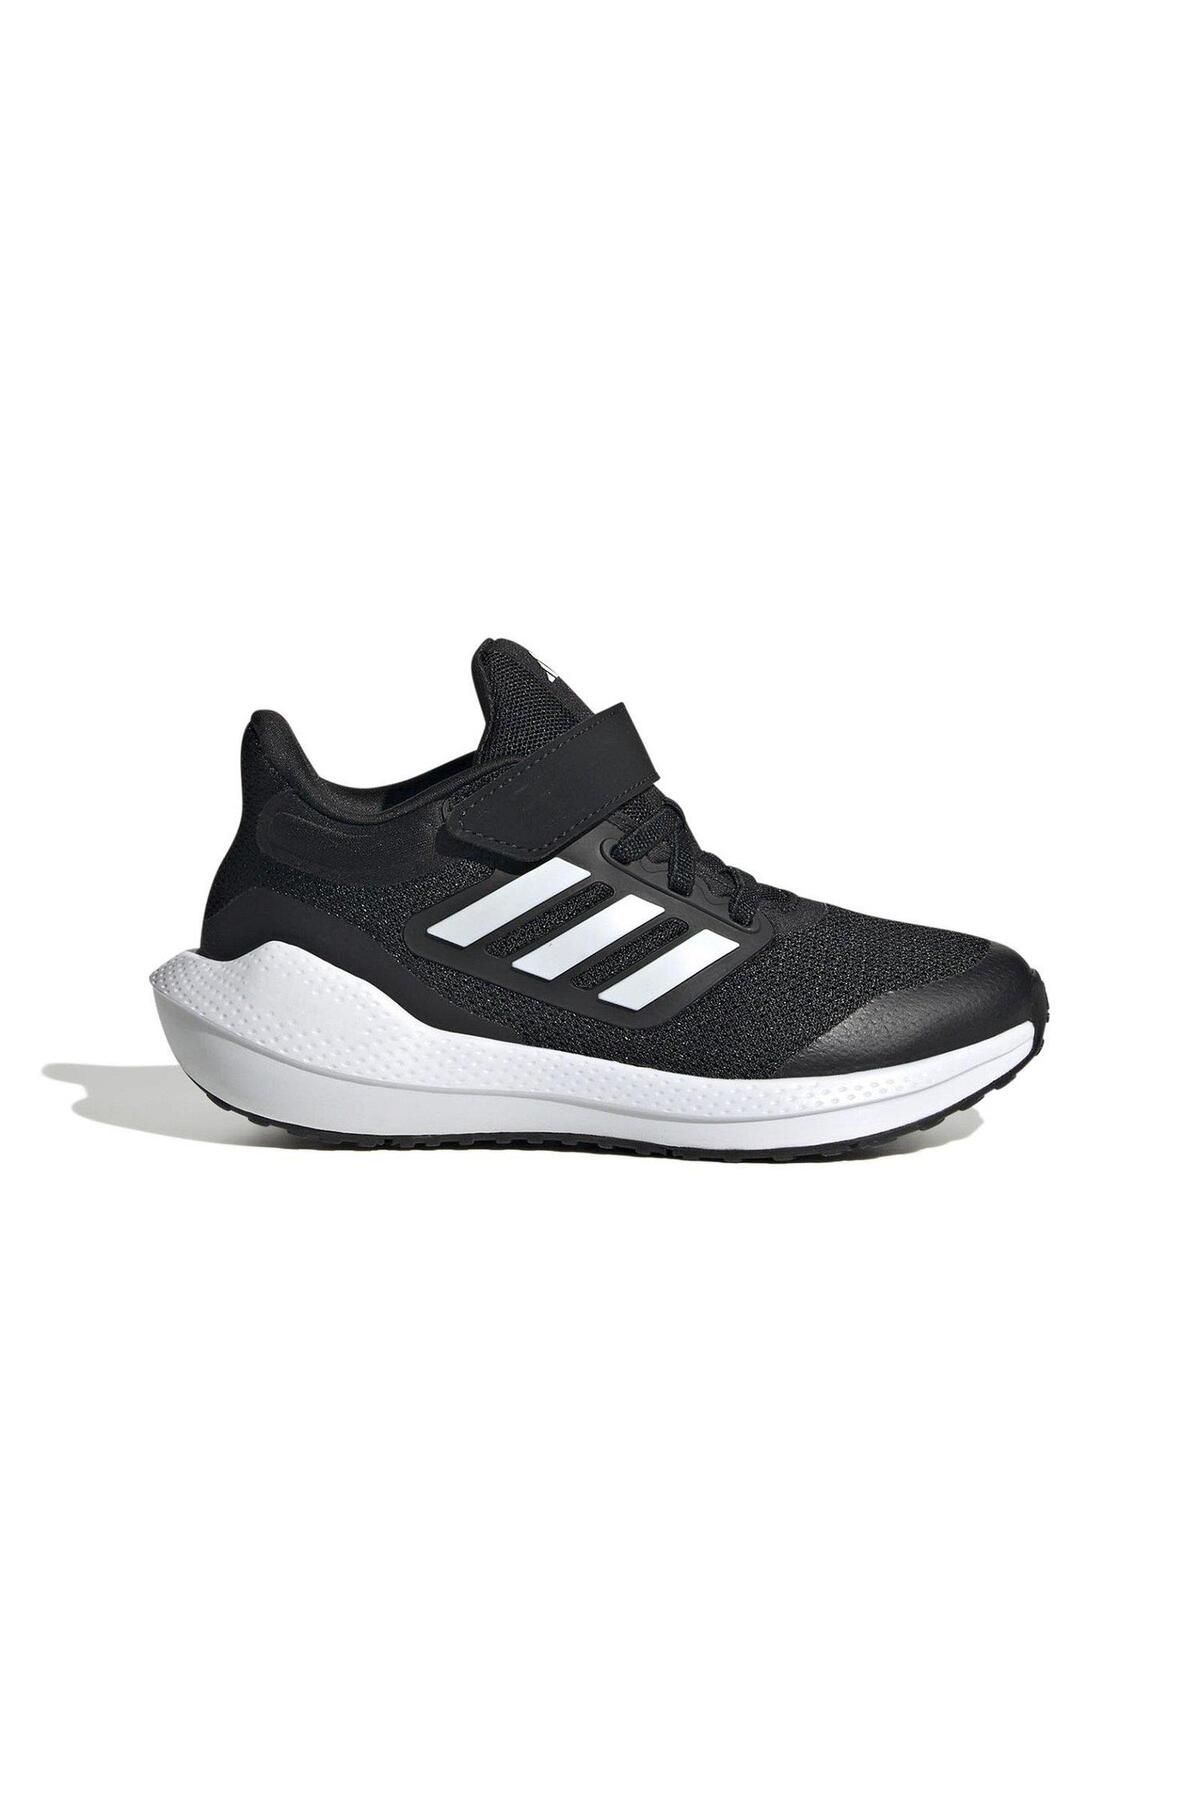 adidas Ultrabounce Spor Ayakkabı HQ1294/Siyah-Beyaz